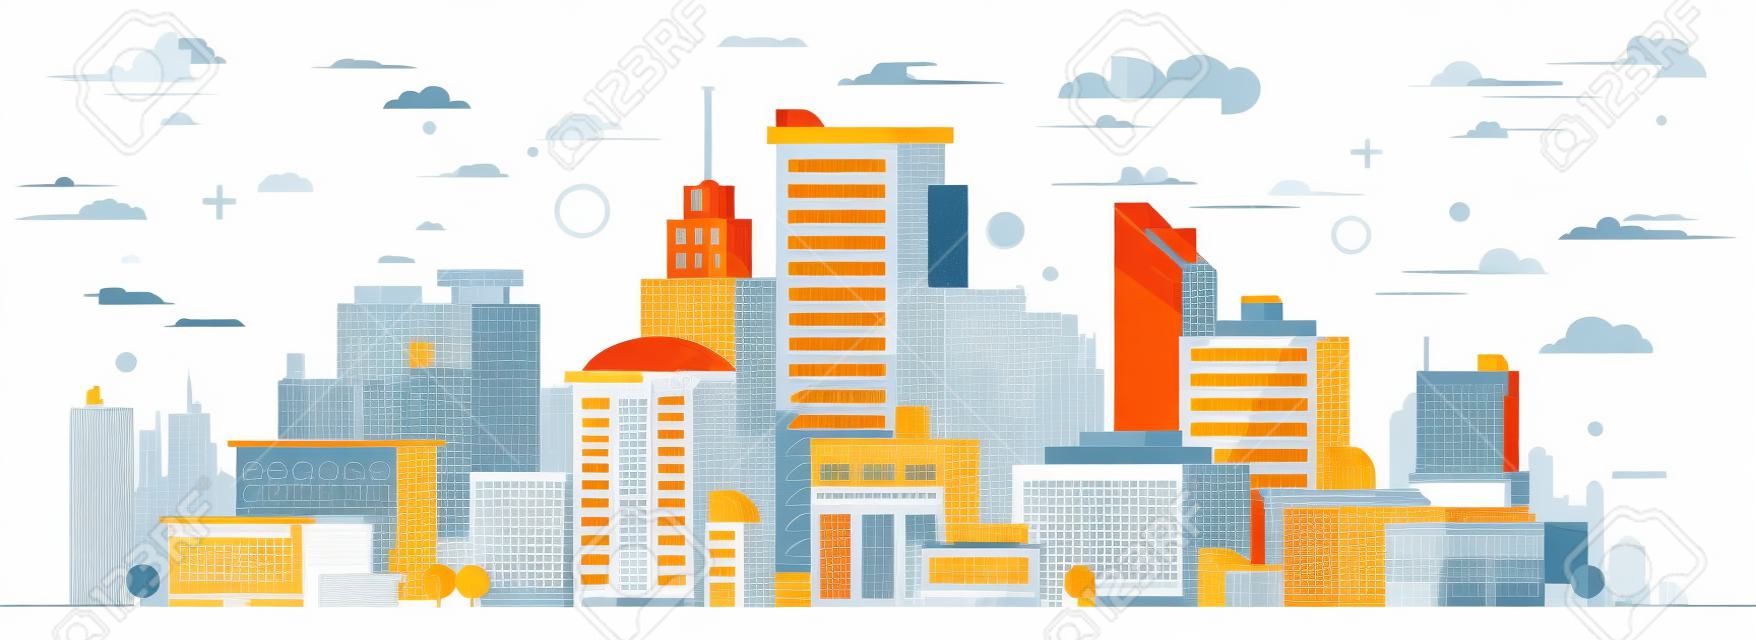 Ilustracja miasta. Wieże i budynki w nowoczesnym stylu mieszkania na białym tle